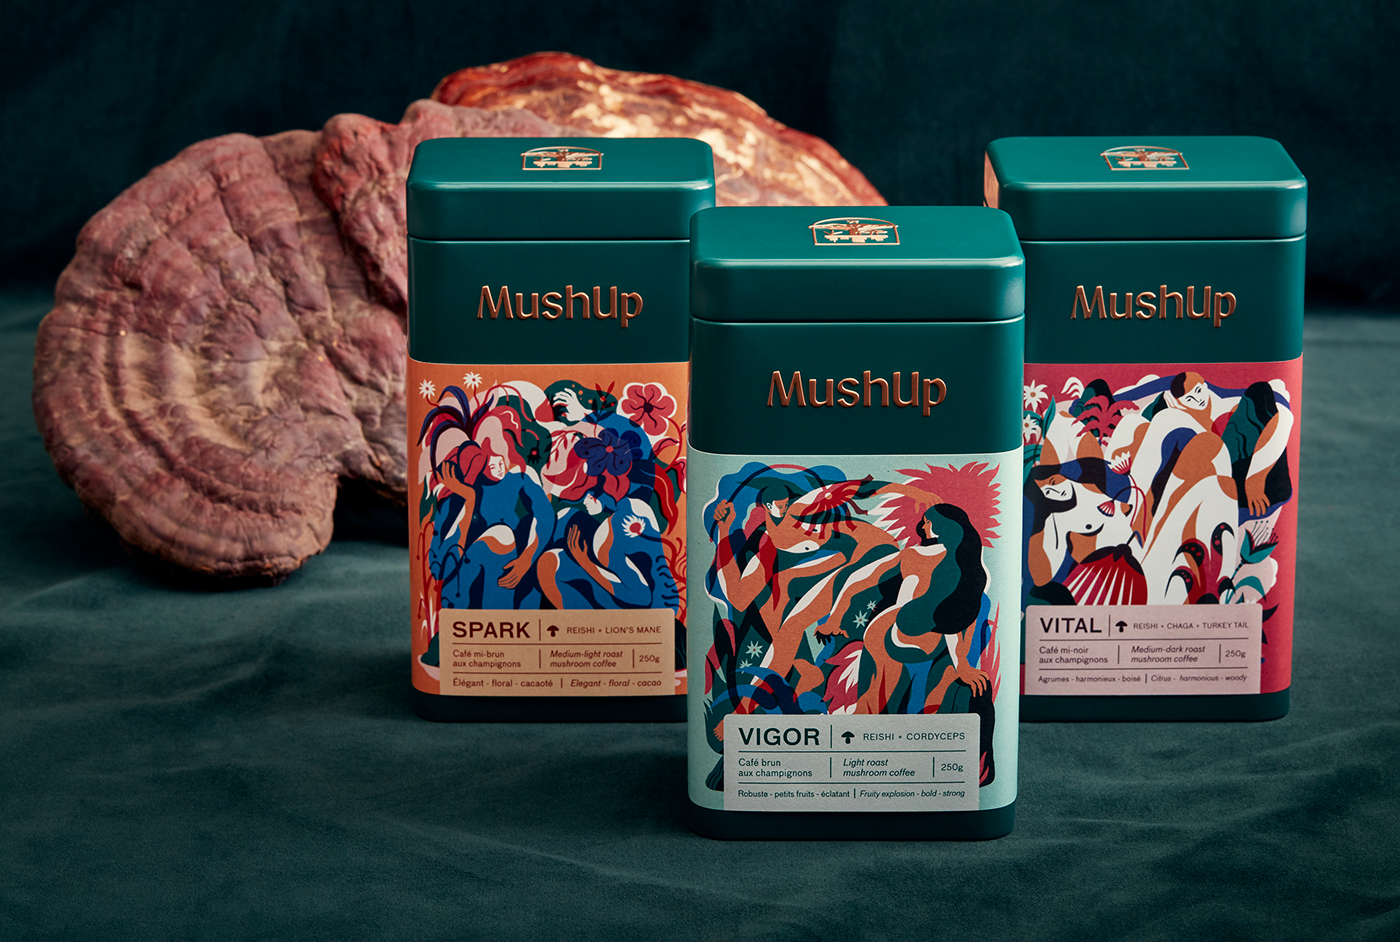 Packaging example #142: MushUp - Branding & Packaging